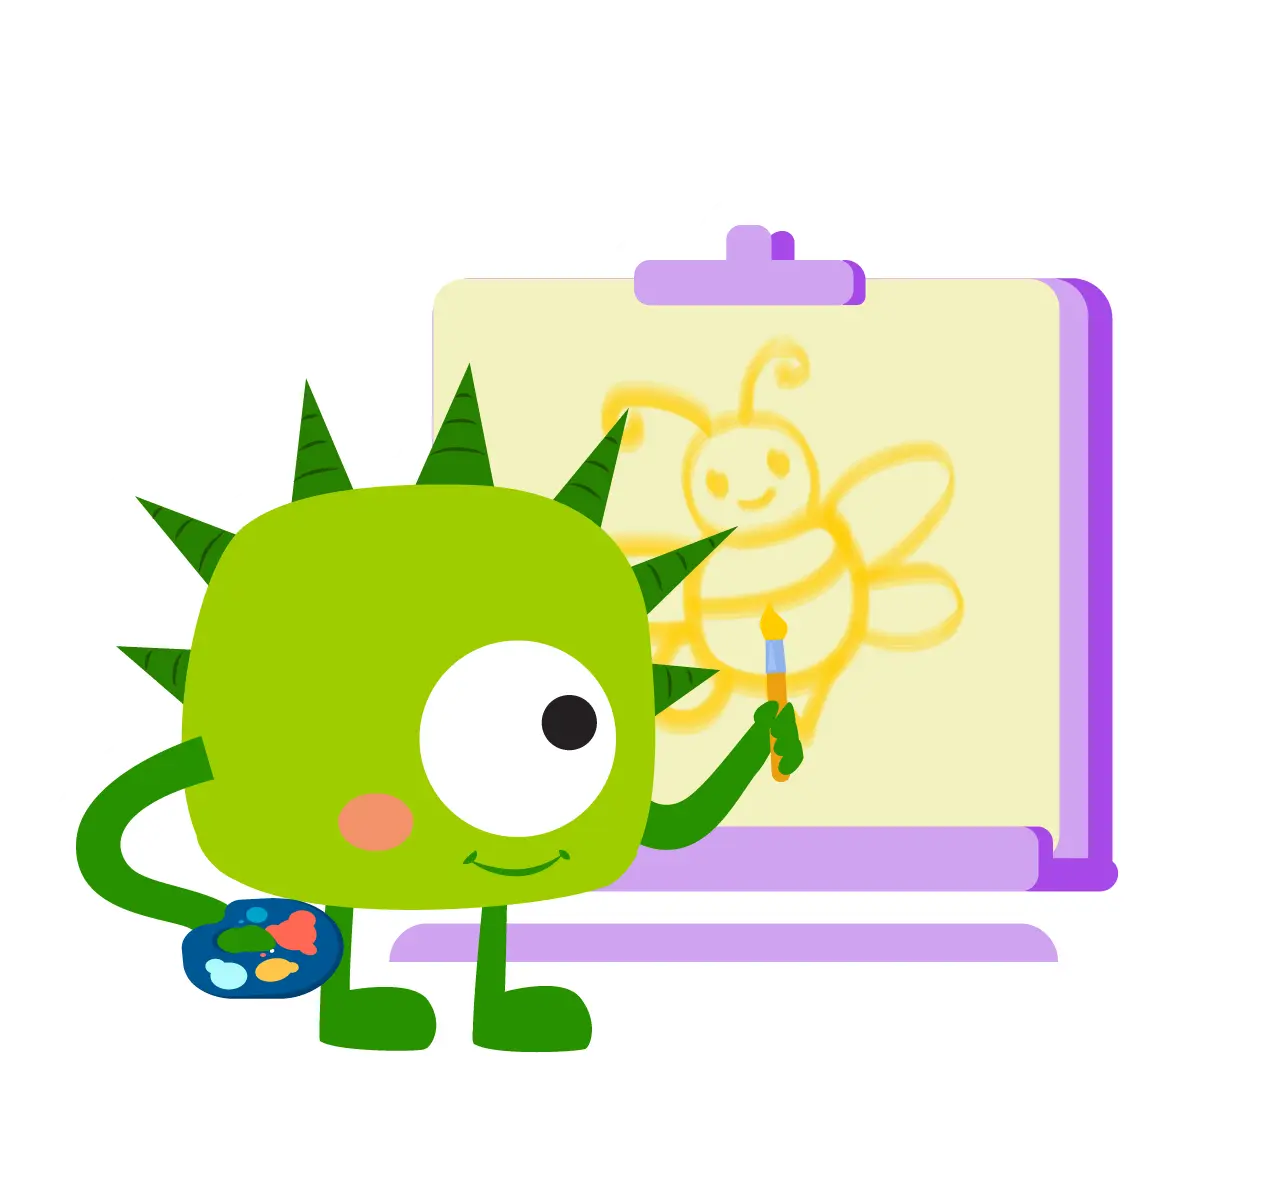 A cute little monster drawing on KidsBeeTV app